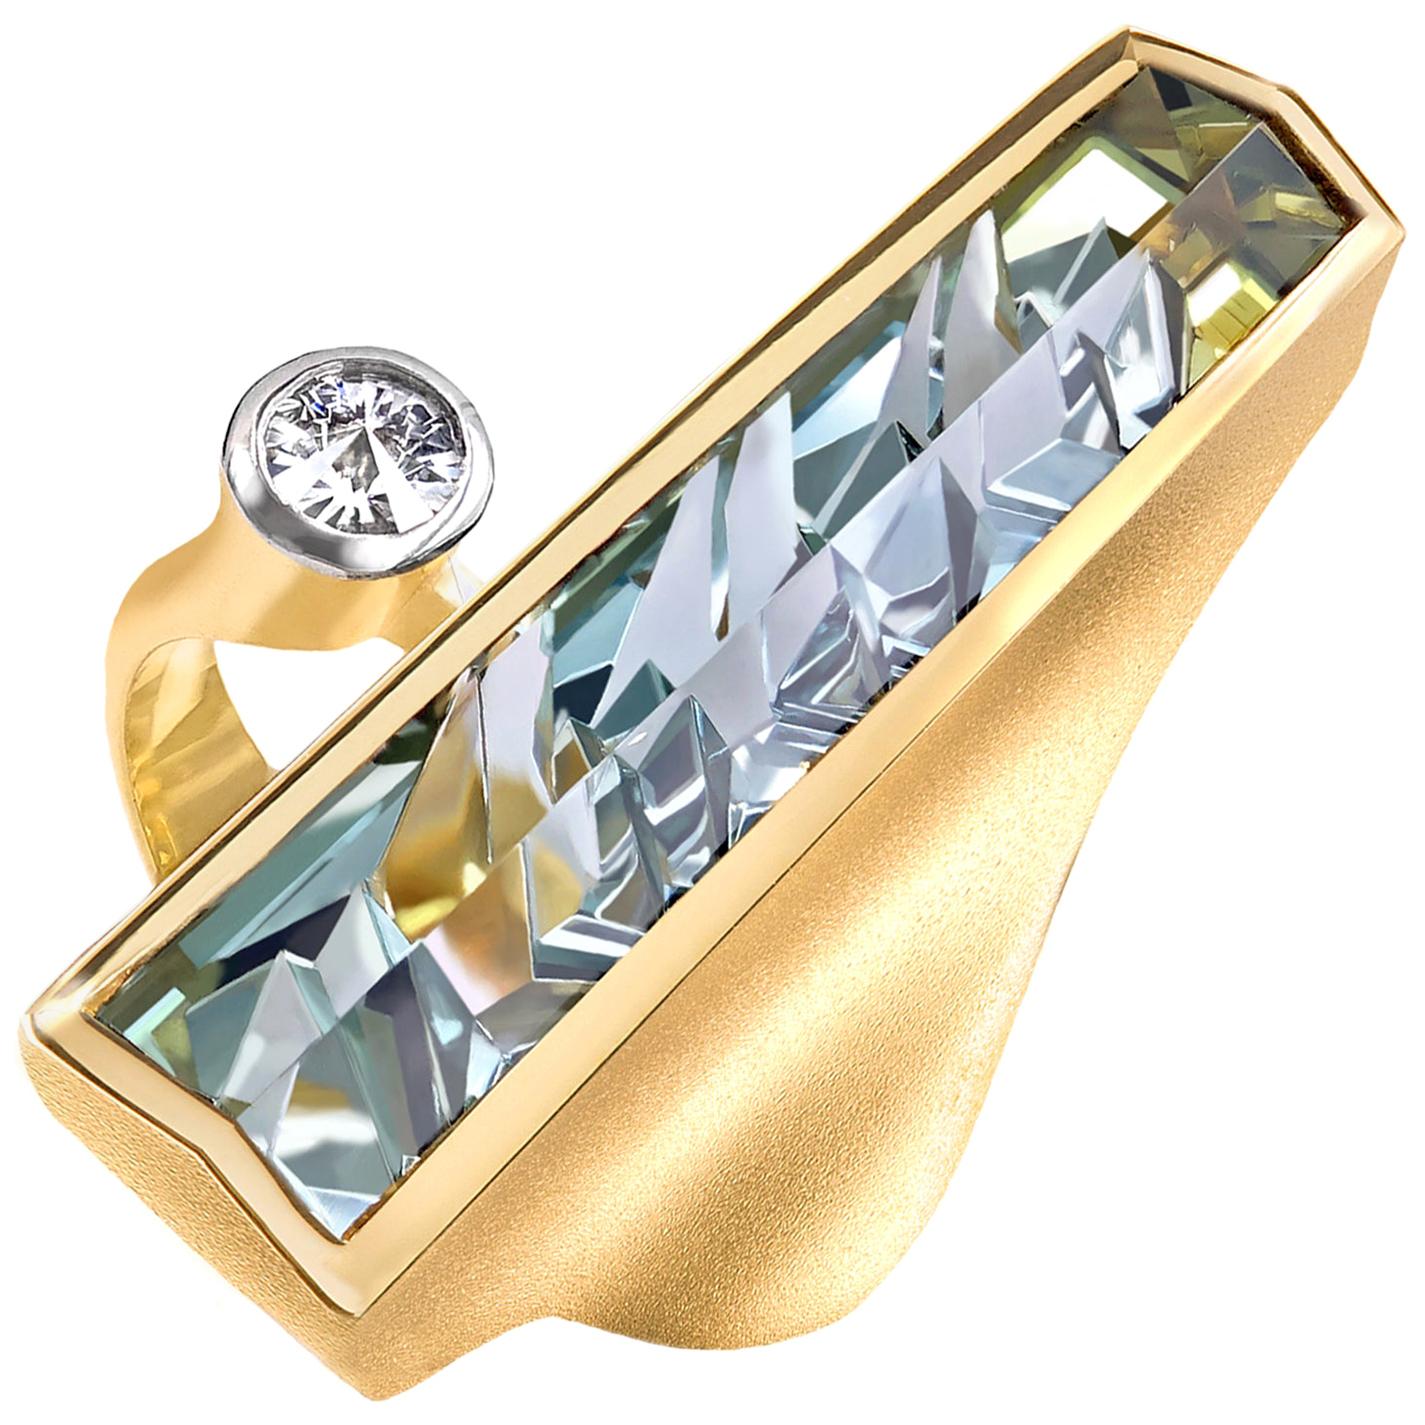 Munsteiner Exceptional Bi-Color Green Tourmaline Spirit-Cut White Diamond Ring